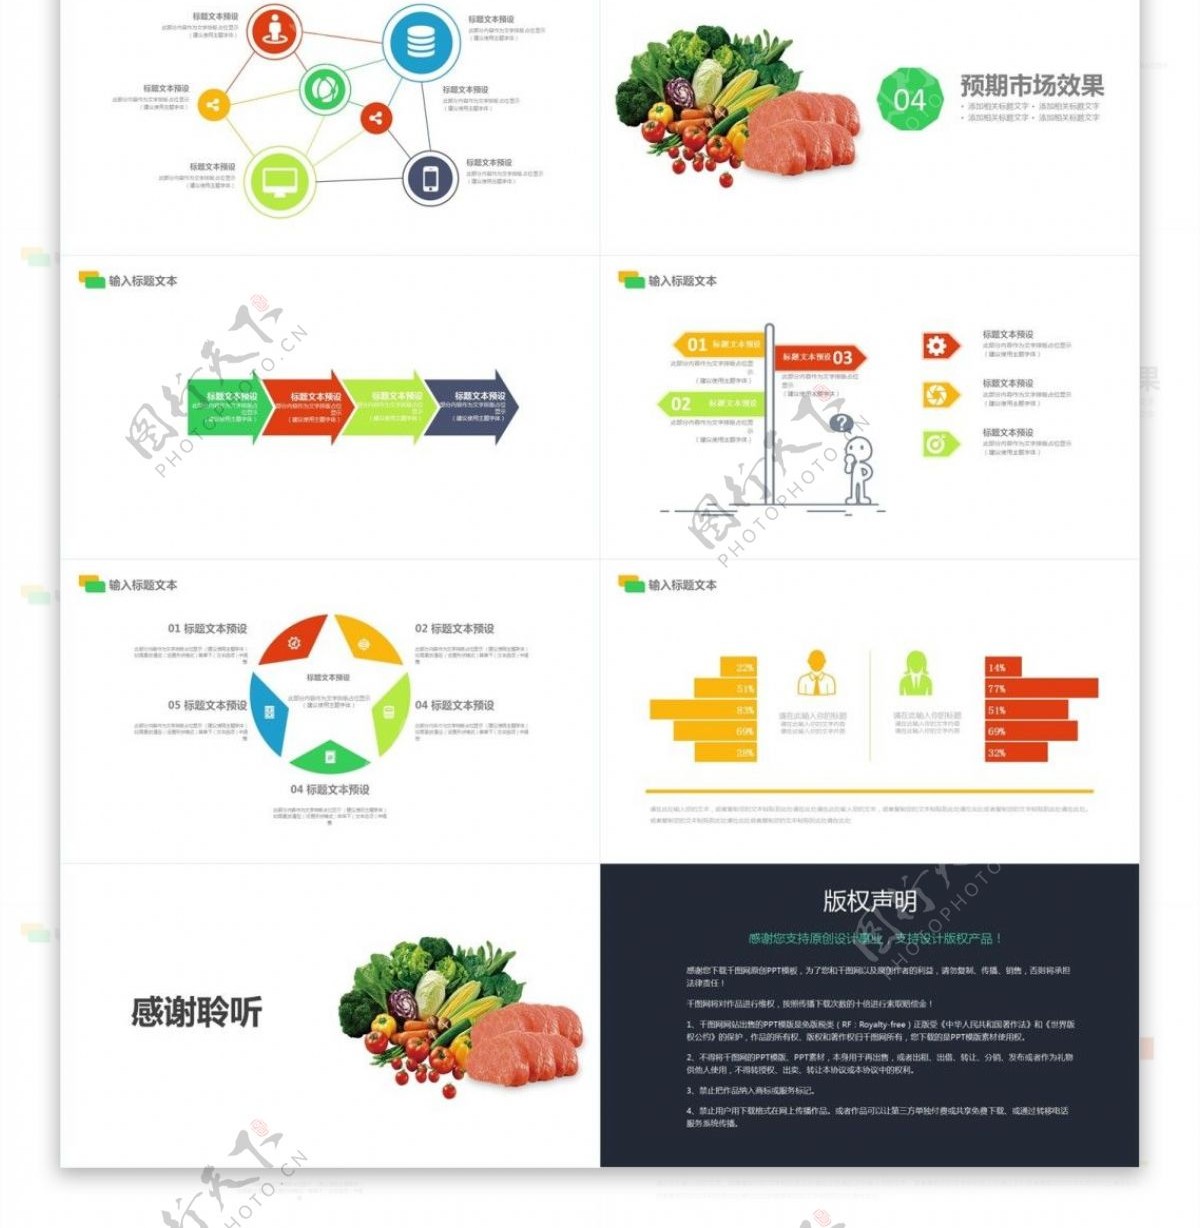 缤纷多样蔬菜食品行业市场营销报告总结模板